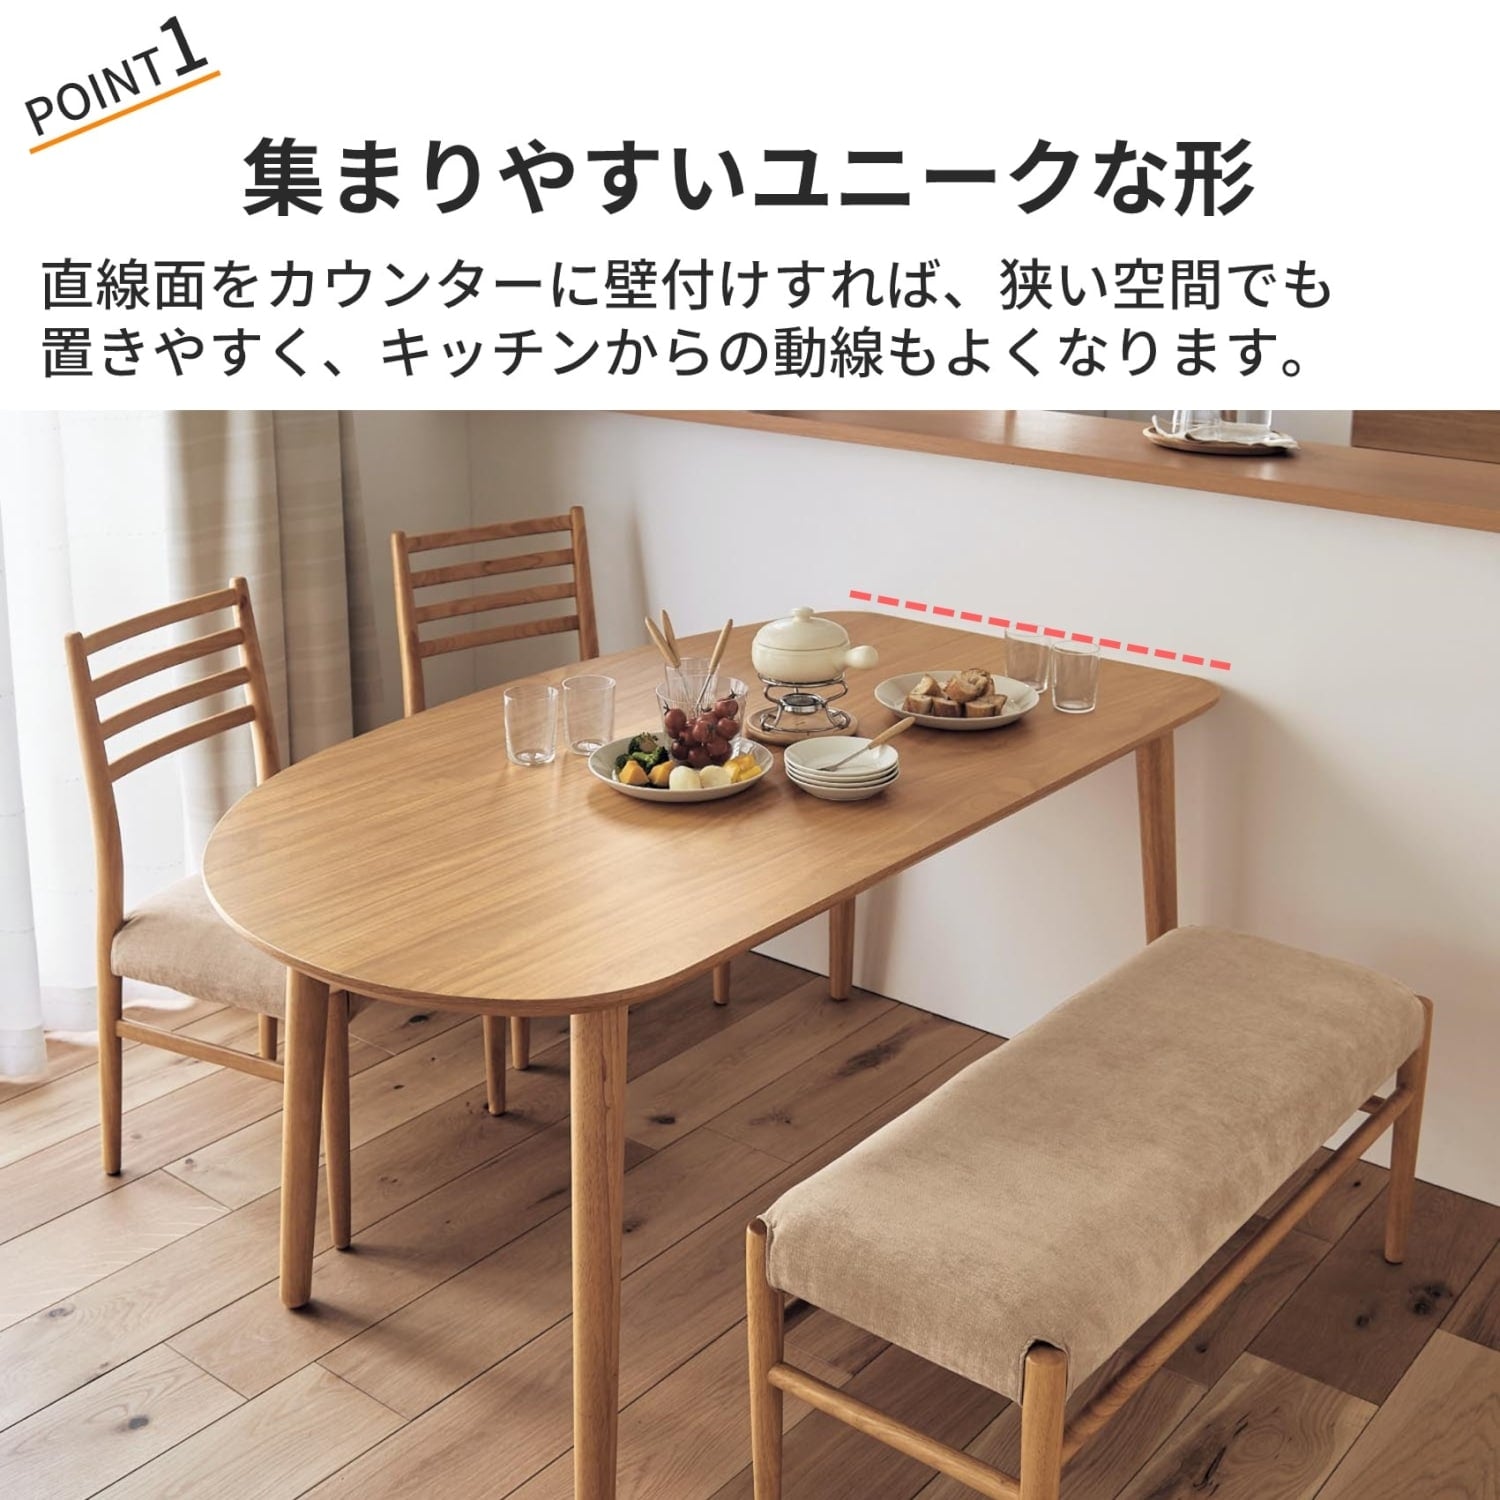 【6月5日まで大型商品送料無料】 変形ダイニングテーブルセット 